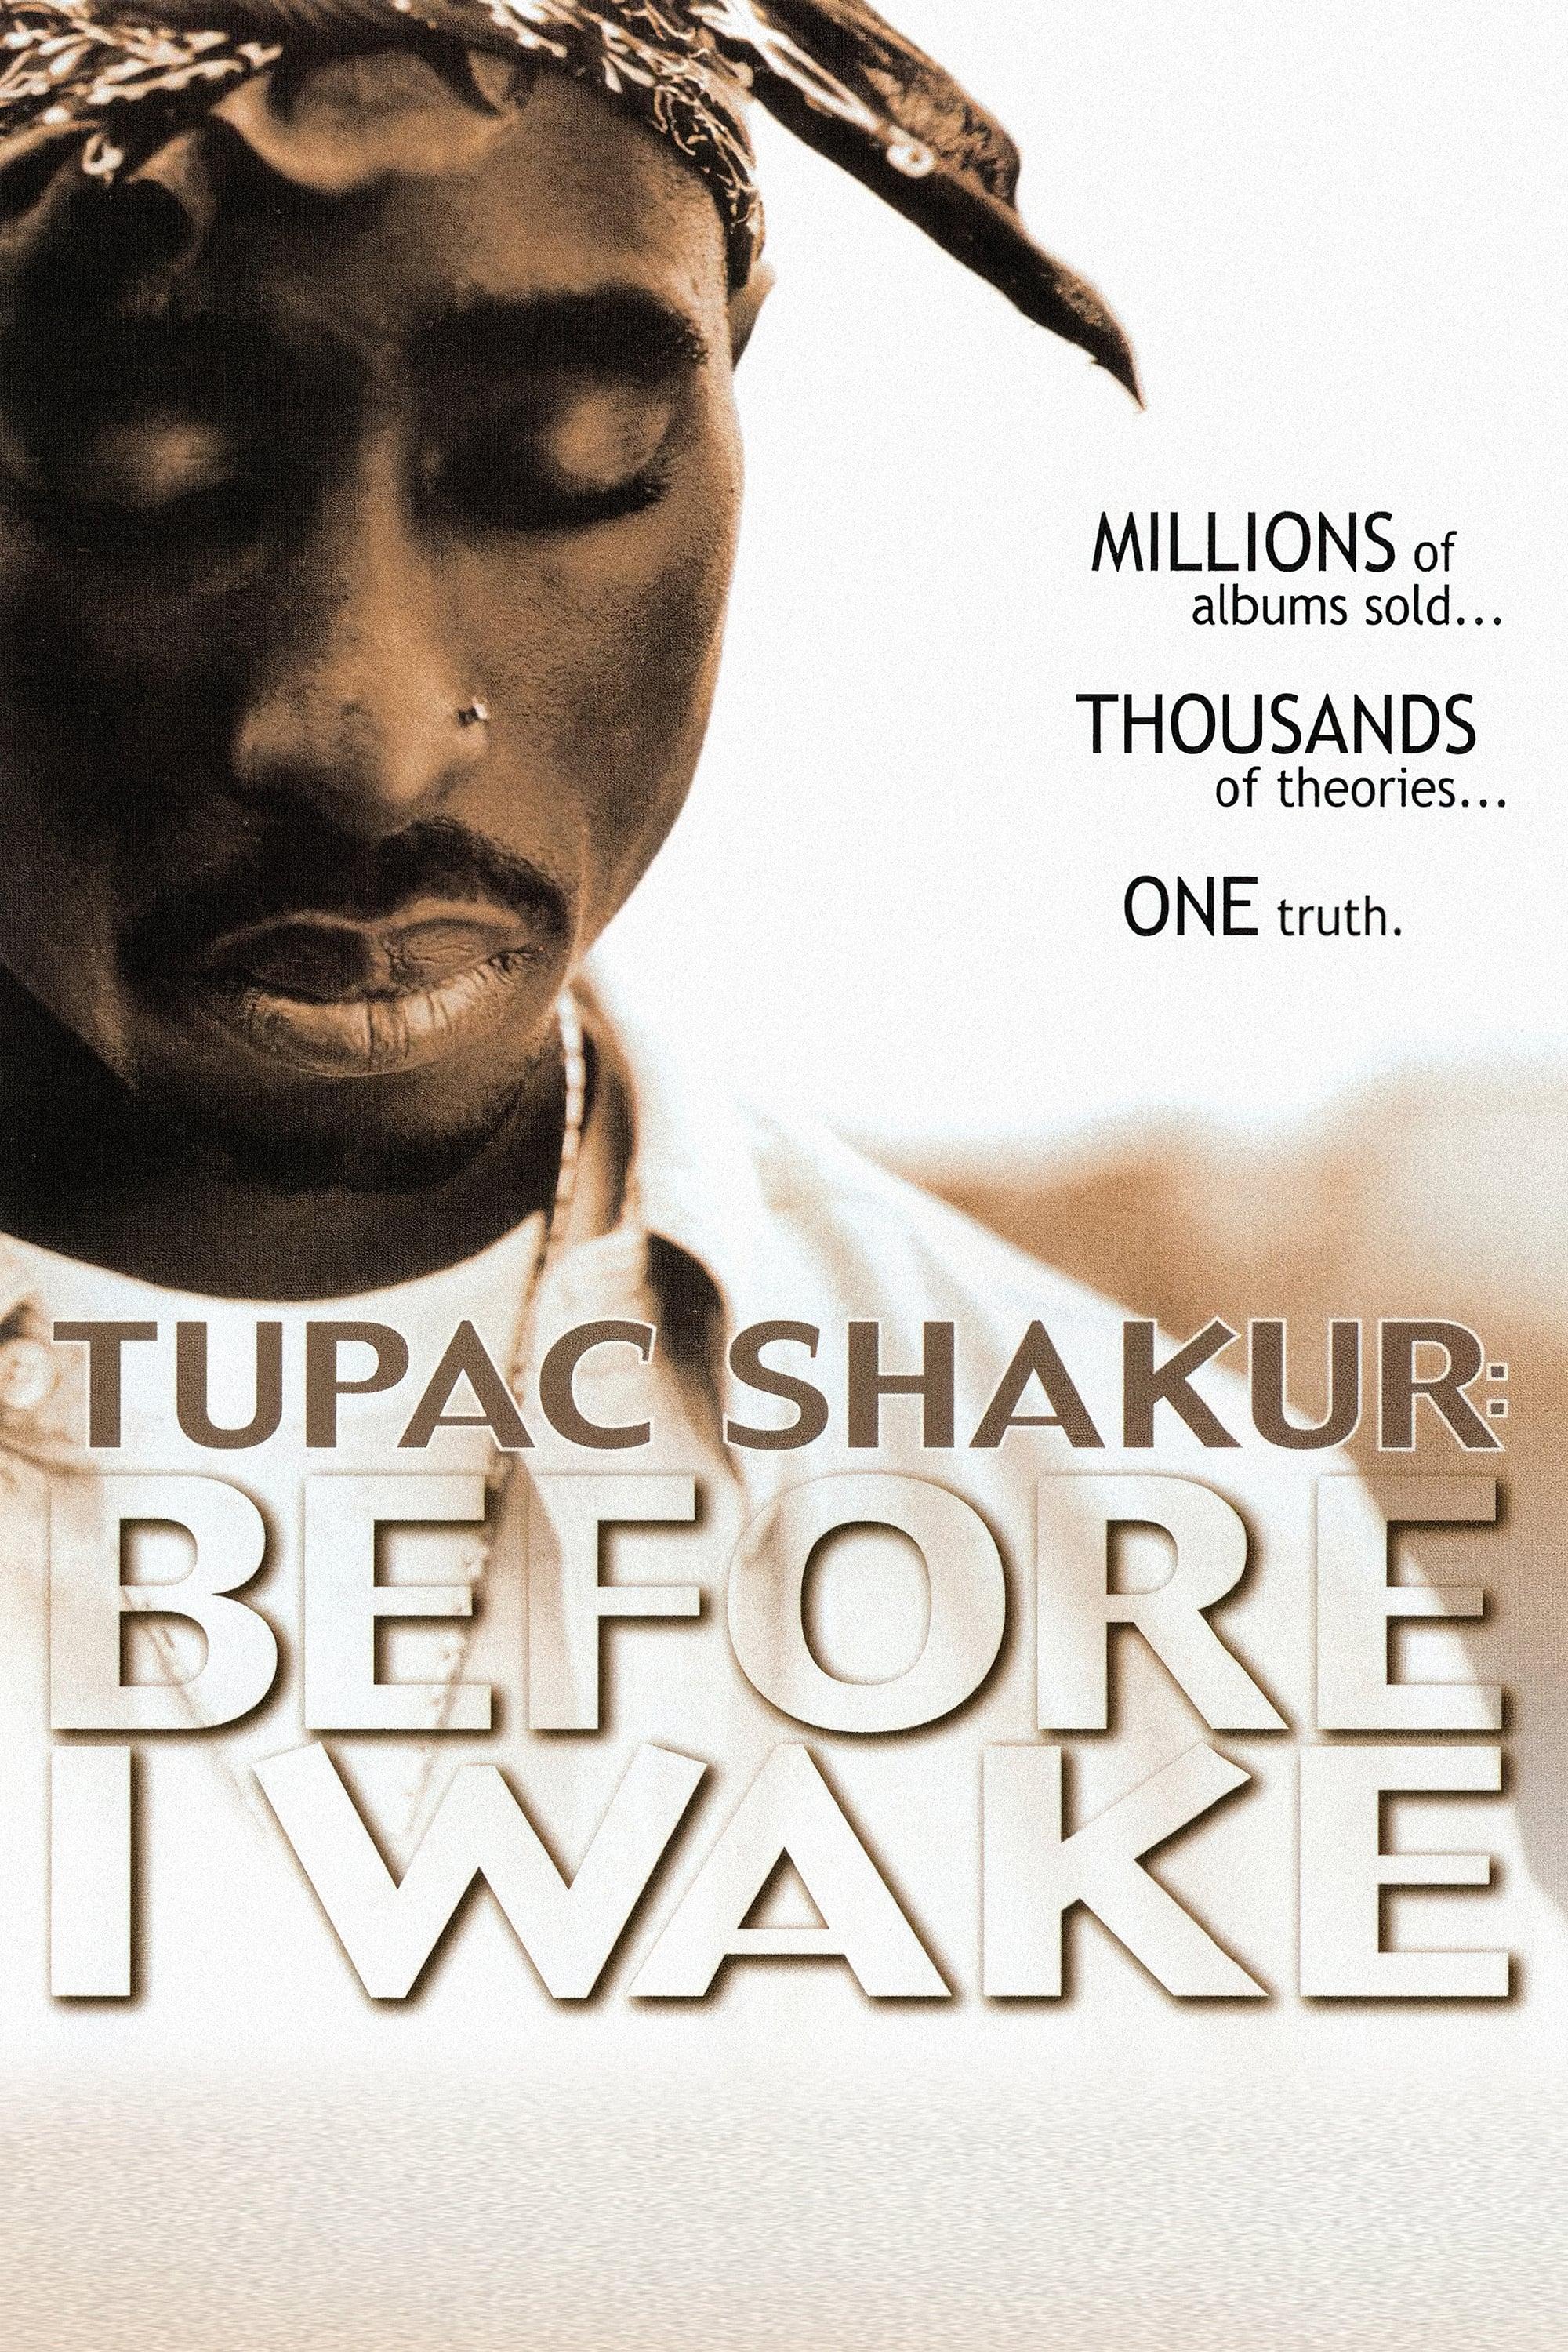 Tupac Shakur: Before I Wake poster